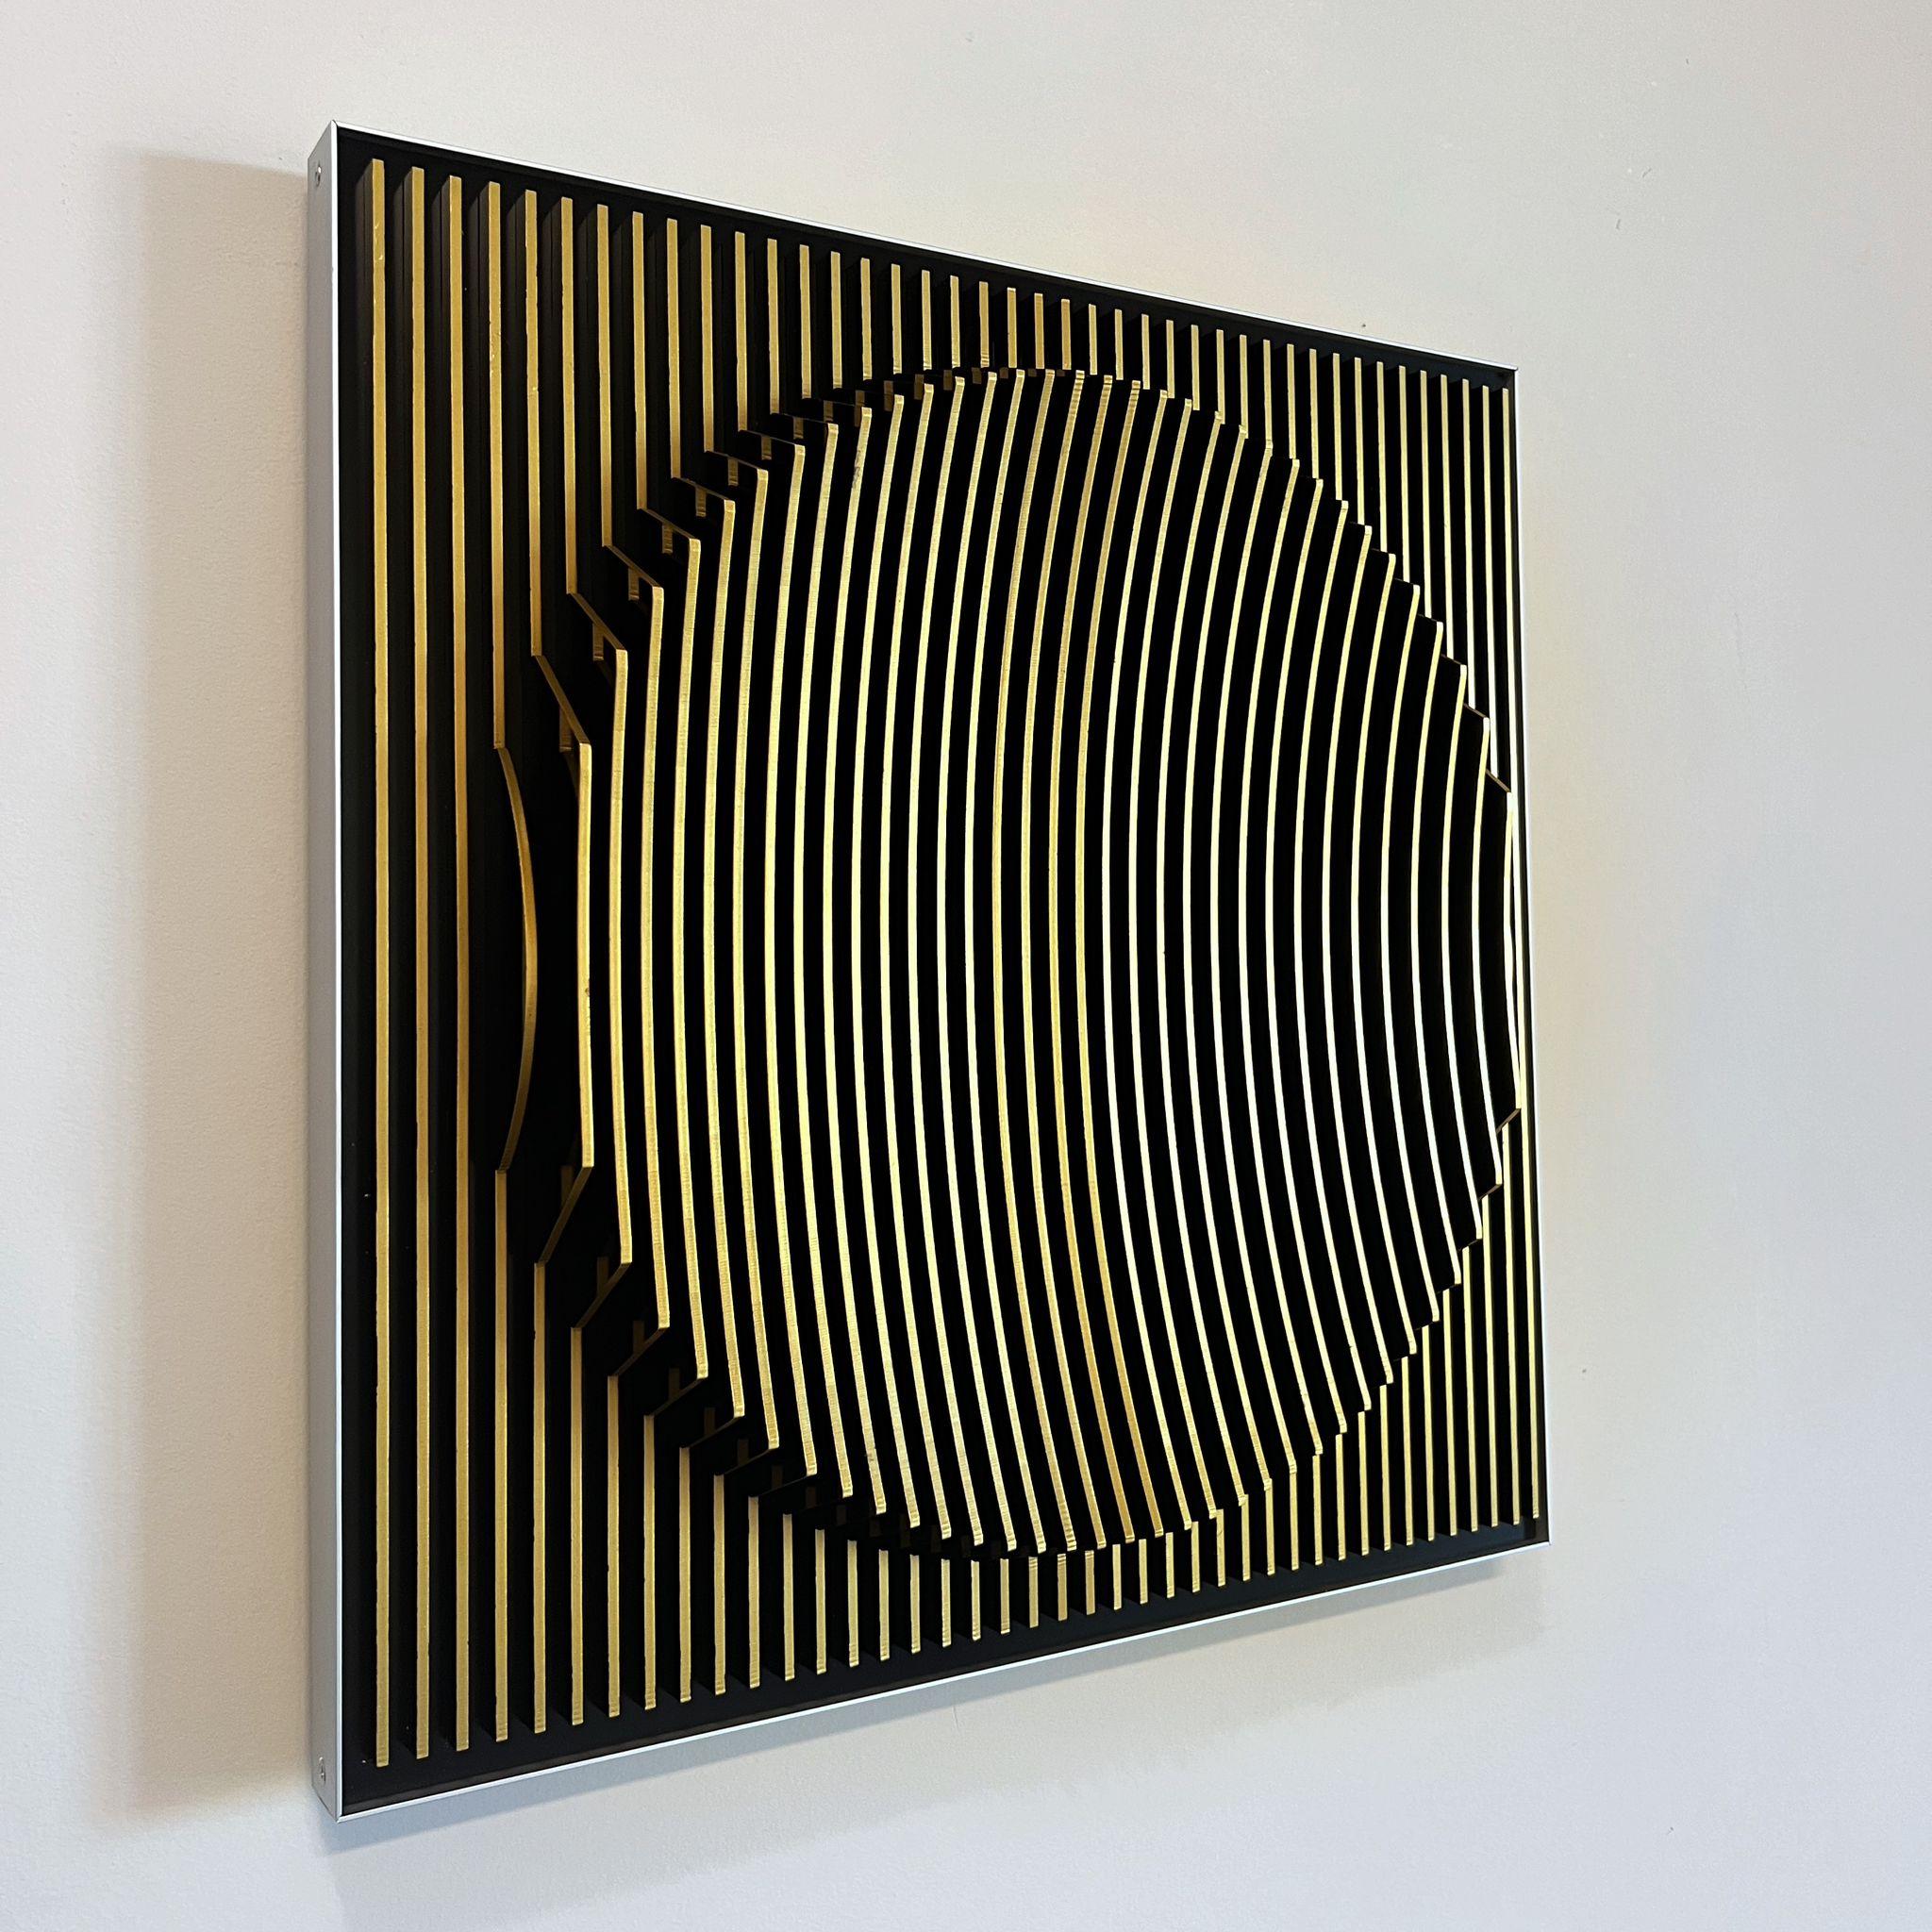 Dieses einzigartige Werk von Margulis stammt aus seinem neuesten Werk und ist ein Unikat. Nachdem er die Plexiglasplatten auf den Aluminiumkern montiert hat, überzieht er die Vorderseite der Platten mit Acrylfarben (Video auf Anfrage erhältlich).